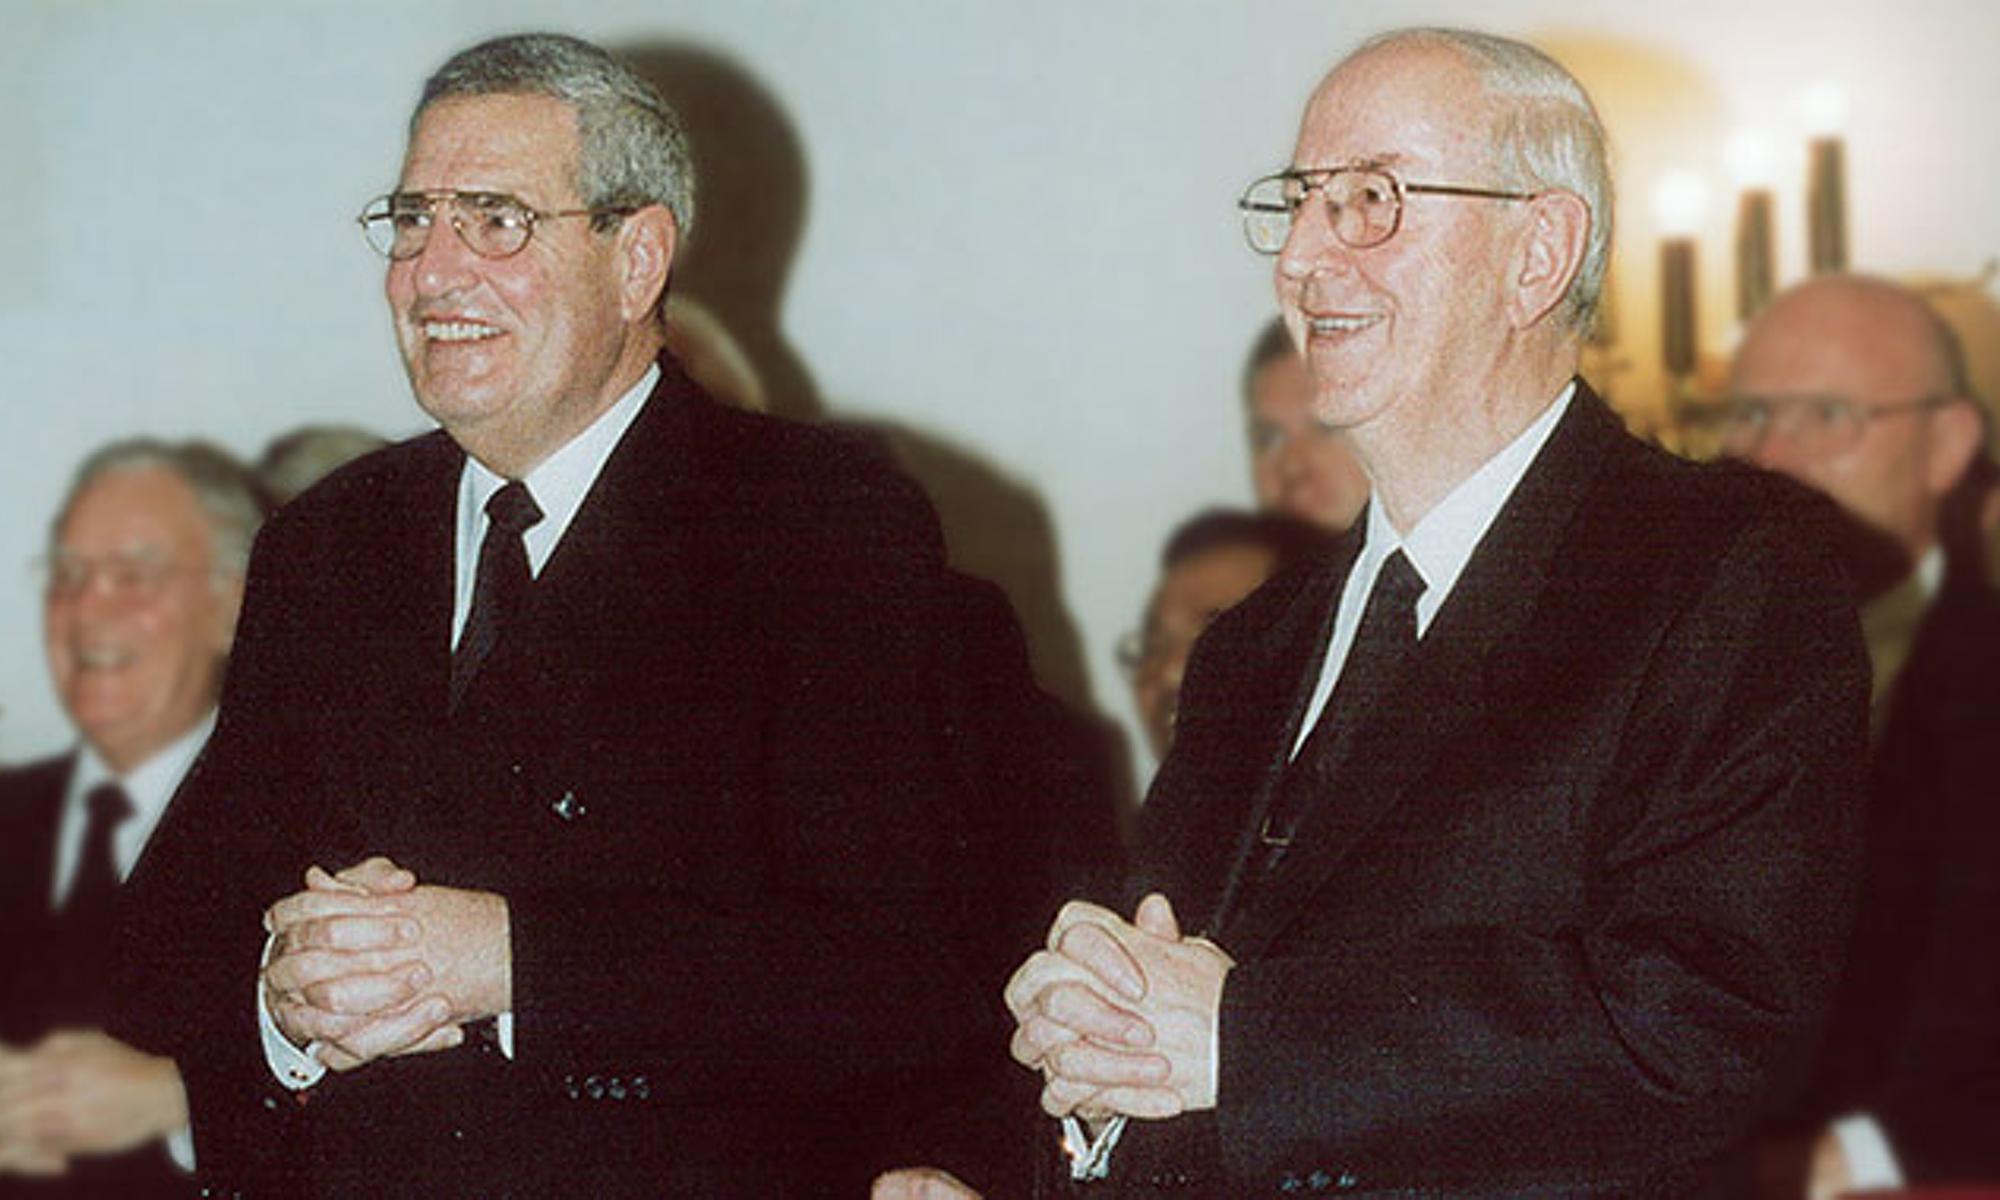 Bezirksapostel Klaus Saur (links im Bild) und Bezirksapostel Karl Kühnle in einem Gottesdienst